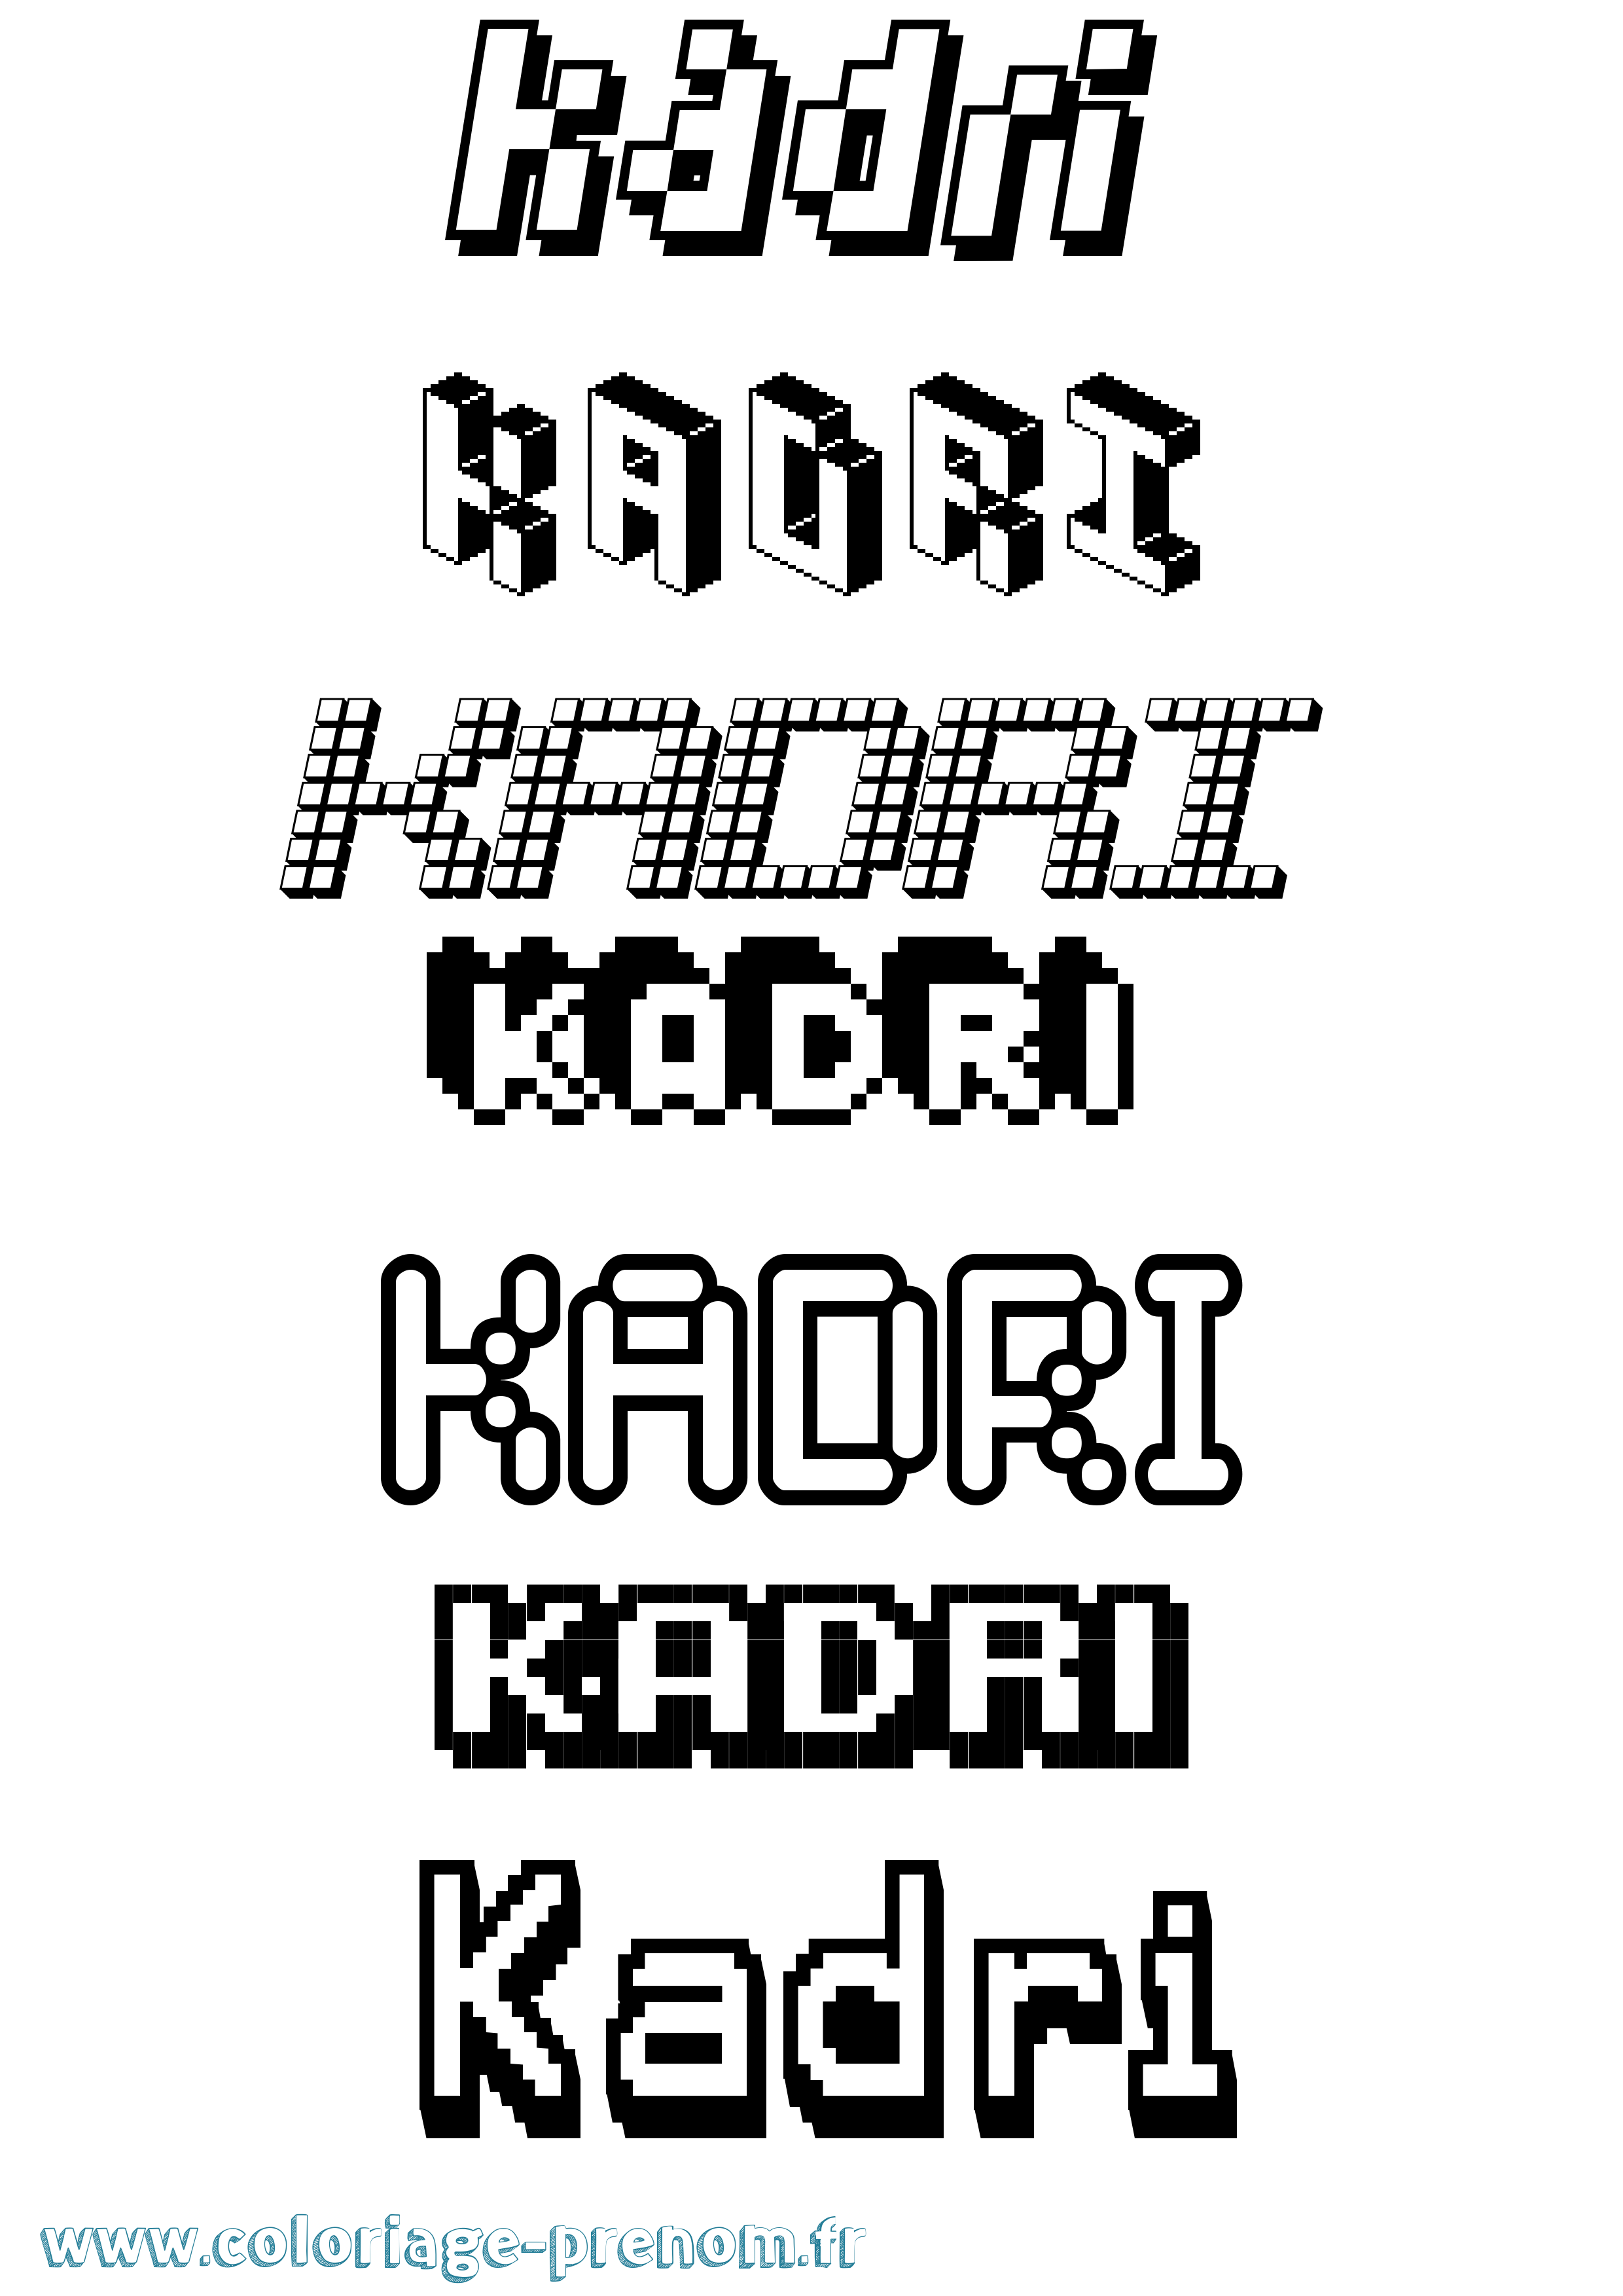 Coloriage prénom Kadri Pixel